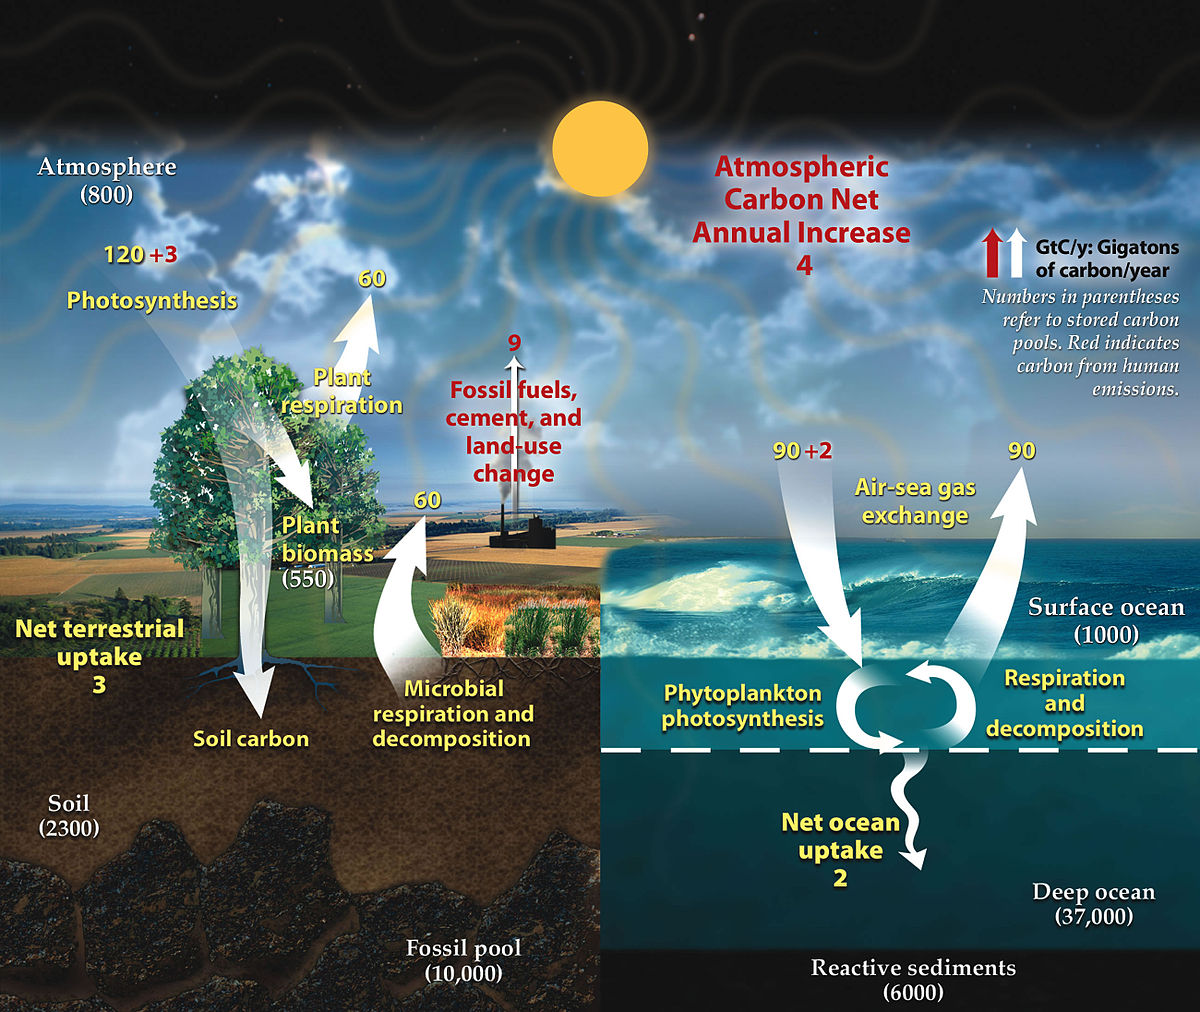 يجري تبادل كثير من ثاني أكسيد الكربون بين الغلاف الحيوي والغلاف الجوي.